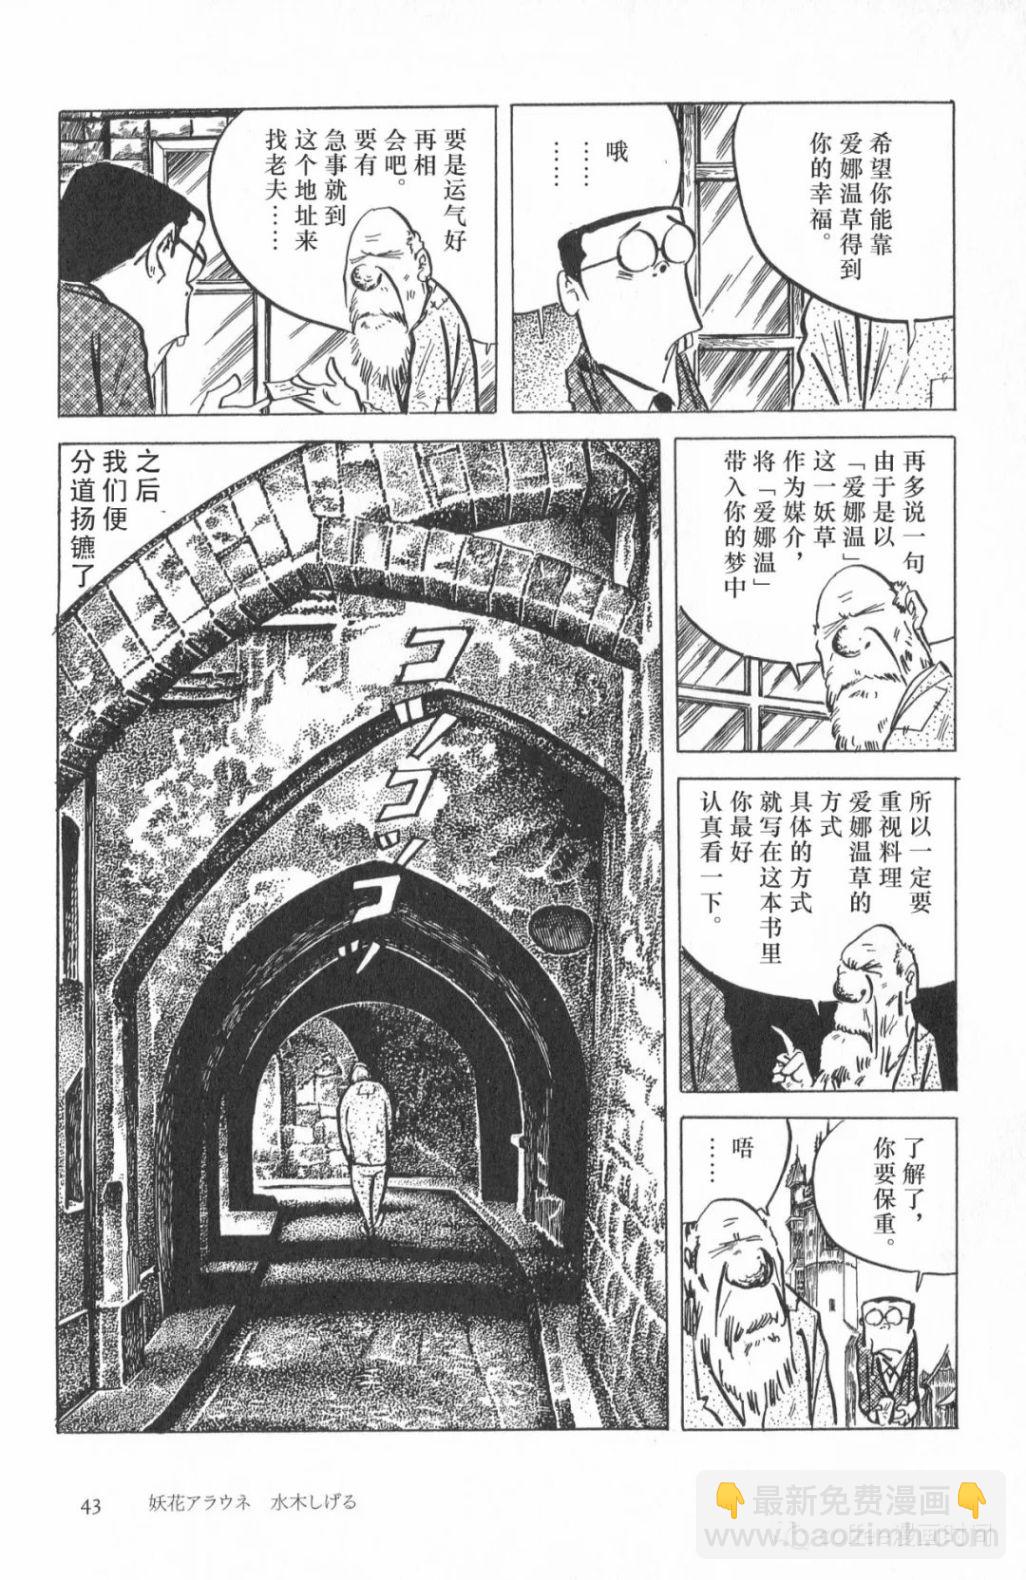 日本短篇漫畫傑作集 - 水木茂《妖花愛娜溫》 - 3